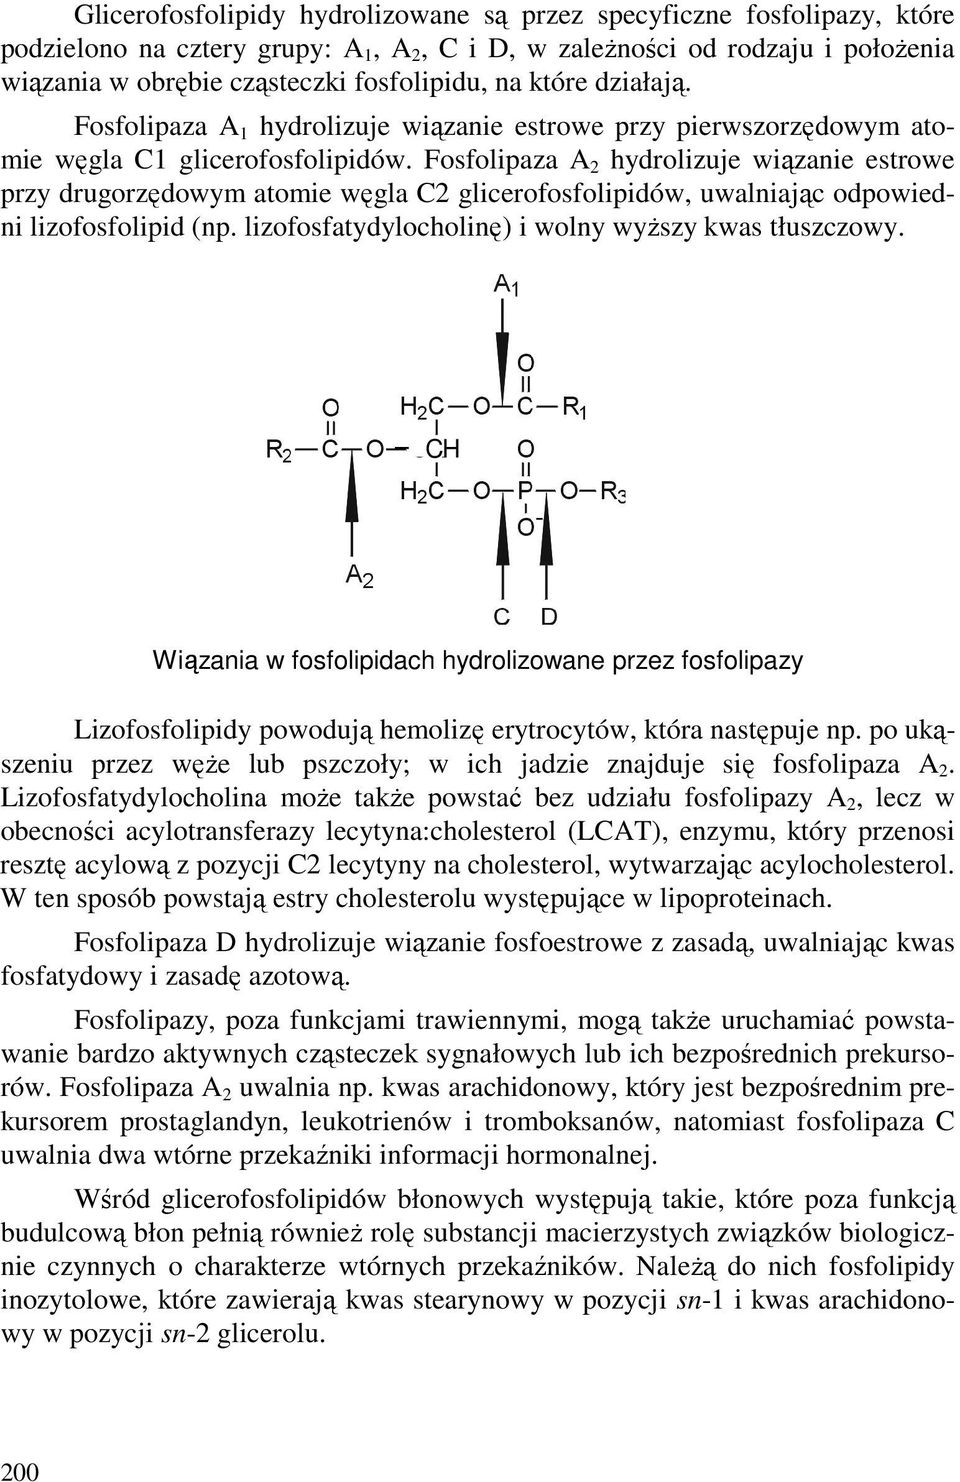 Fosfolipaza A 2 hydrolizuje wiązanie estrowe przy drugorzędowym atomie węgla 2 glicerofosfolipidów, uwalniając odpowiedni lizofosfolipid (np. lizofosfatydylocholinę) i wolny wyŝszy kwas tłuszczowy.